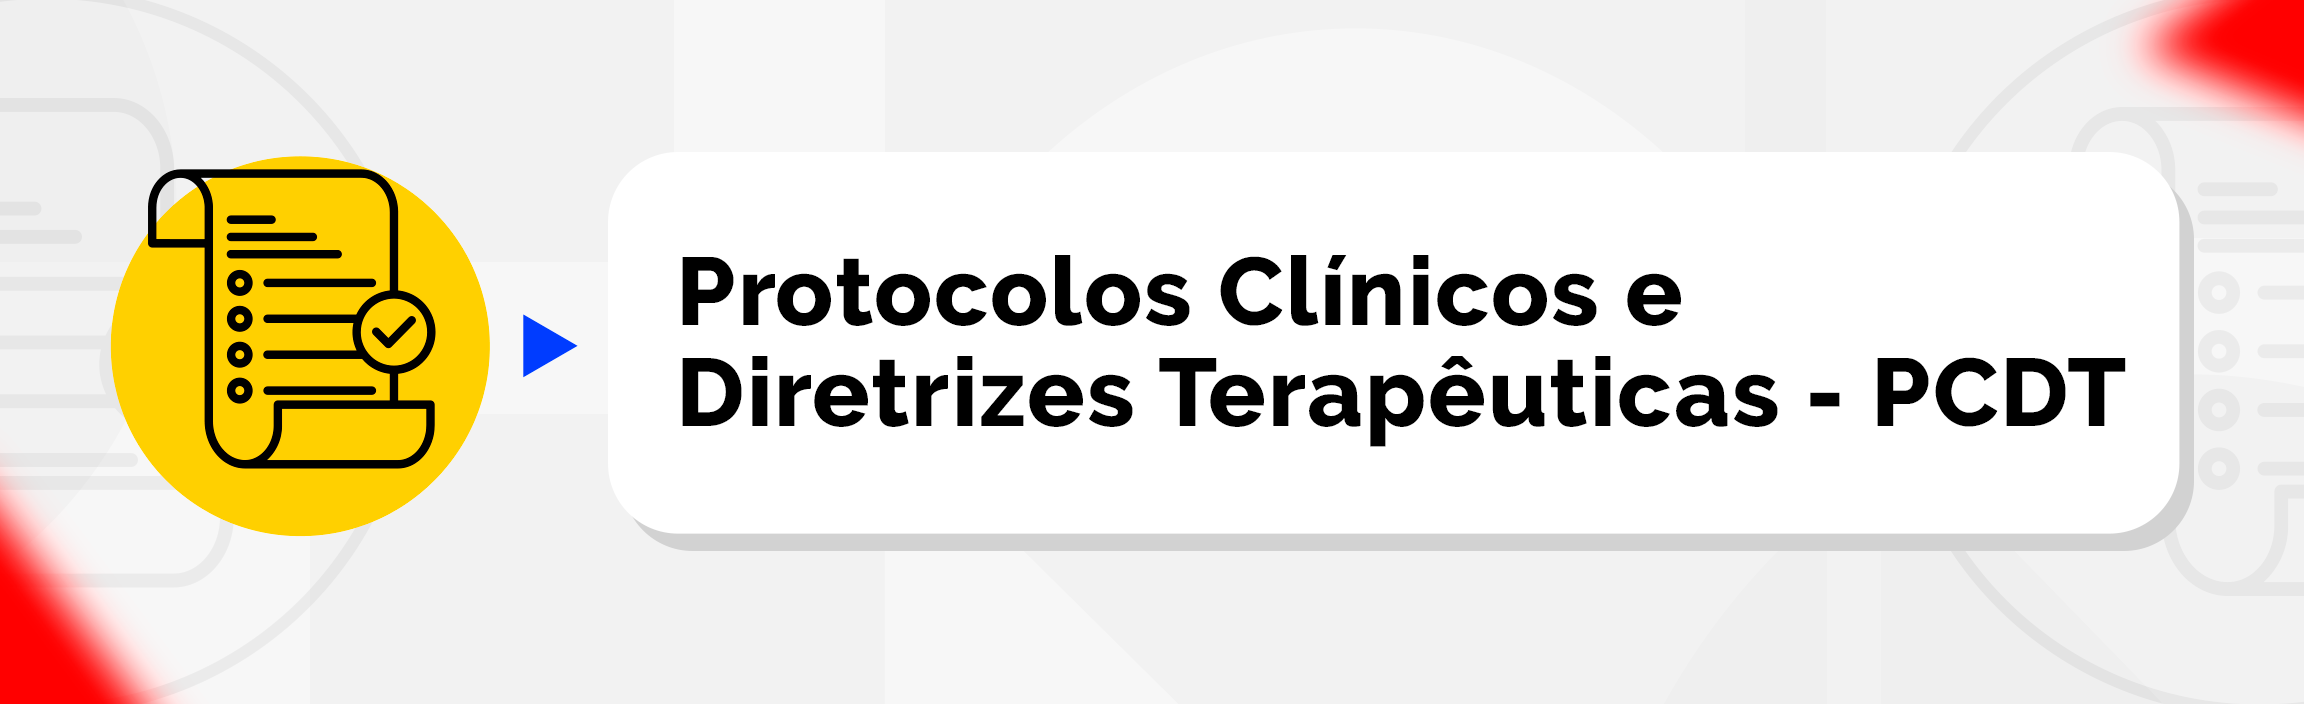 Protocolos Clínicos e Diretrizes Terapêuticas - PCDT